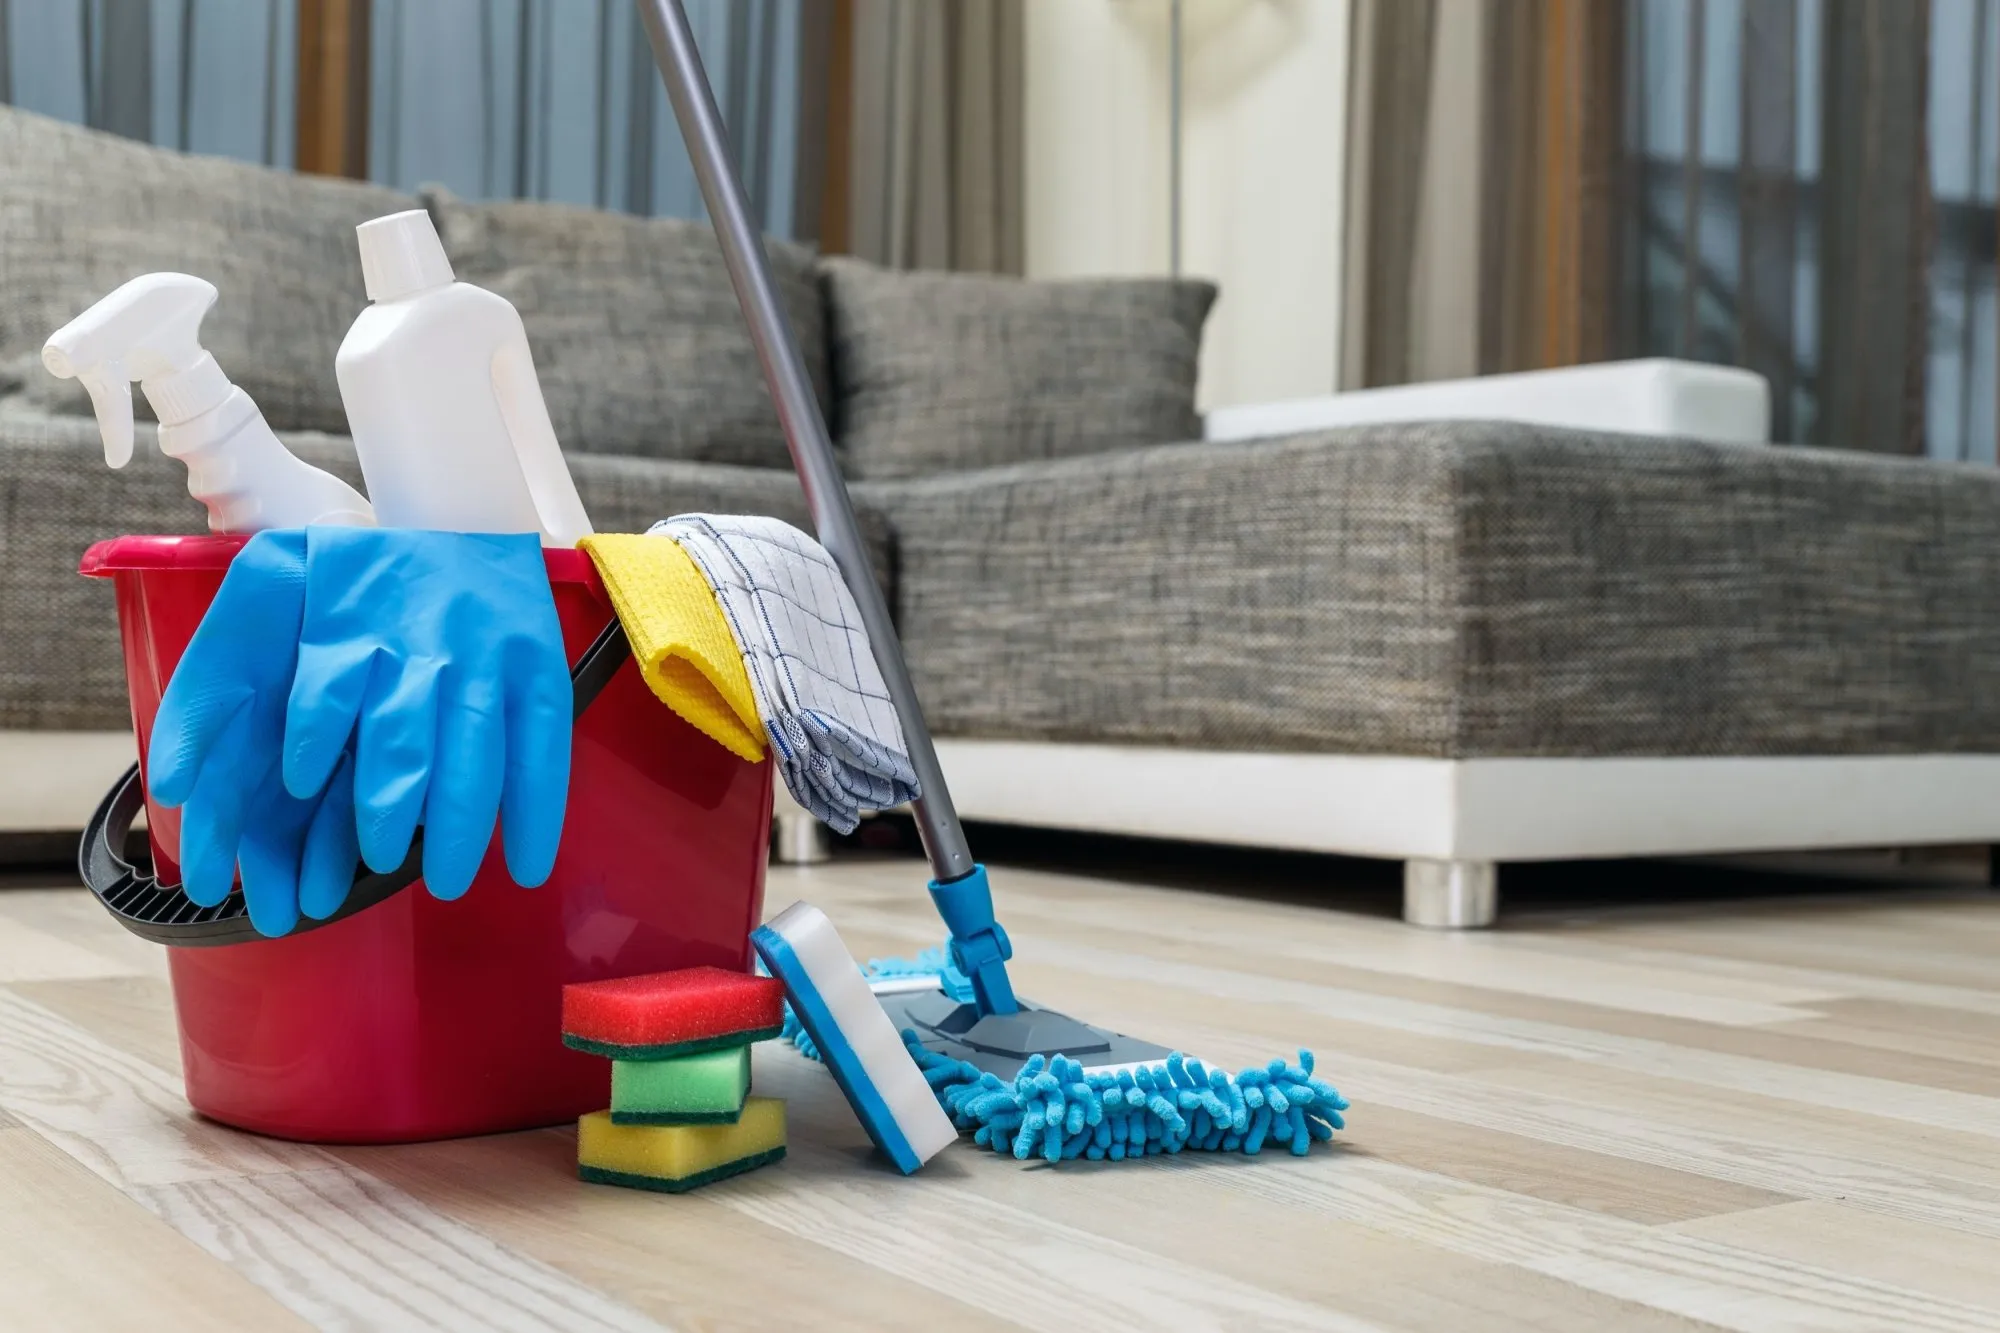 Невеликі ритуали допоможуть підтримувати дім в чистоті